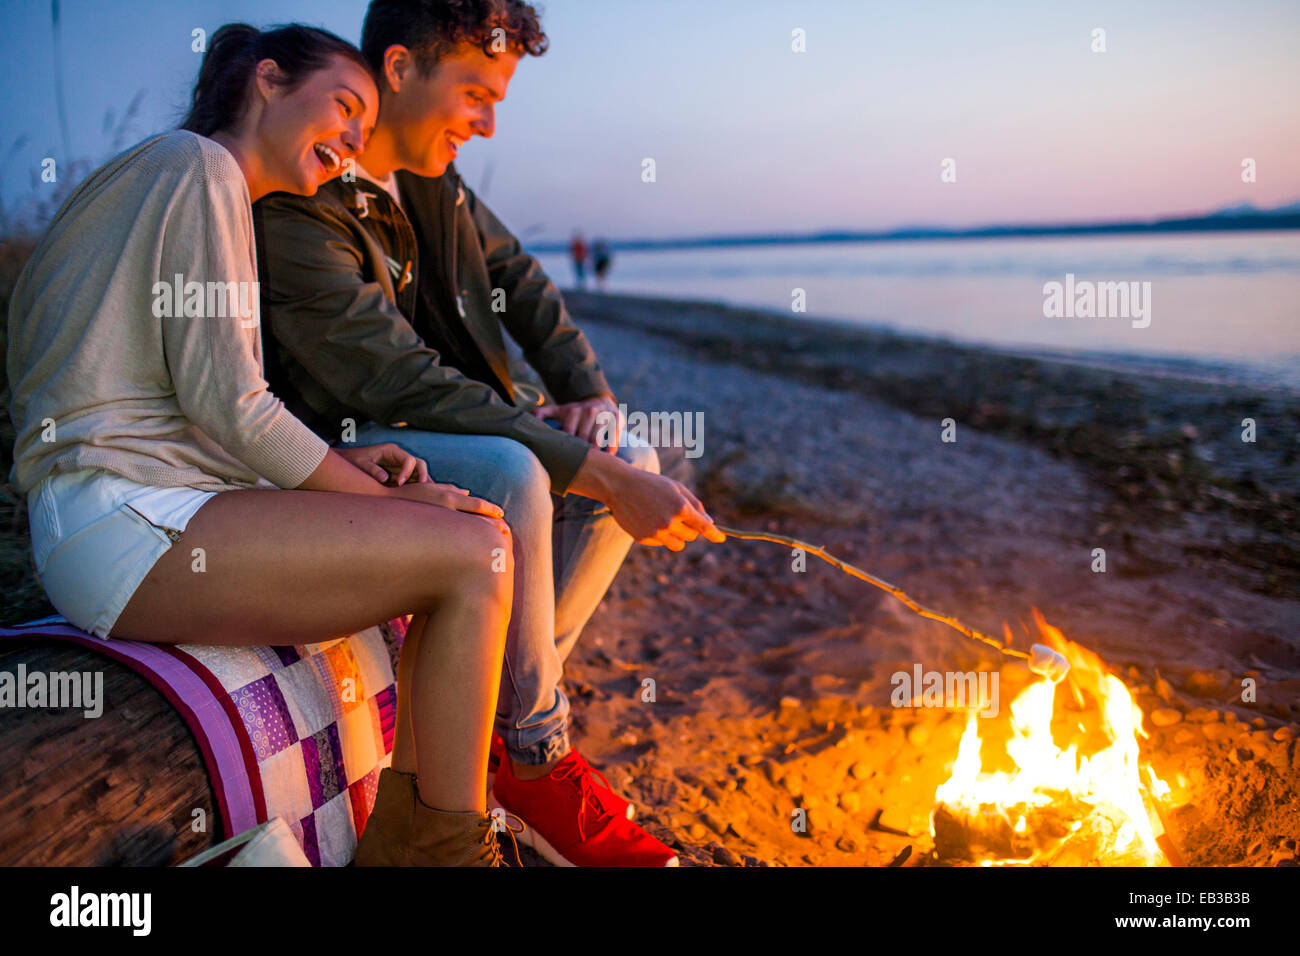 Couple de la torréfaction des guimauves sur le feu sur beach Banque D'Images